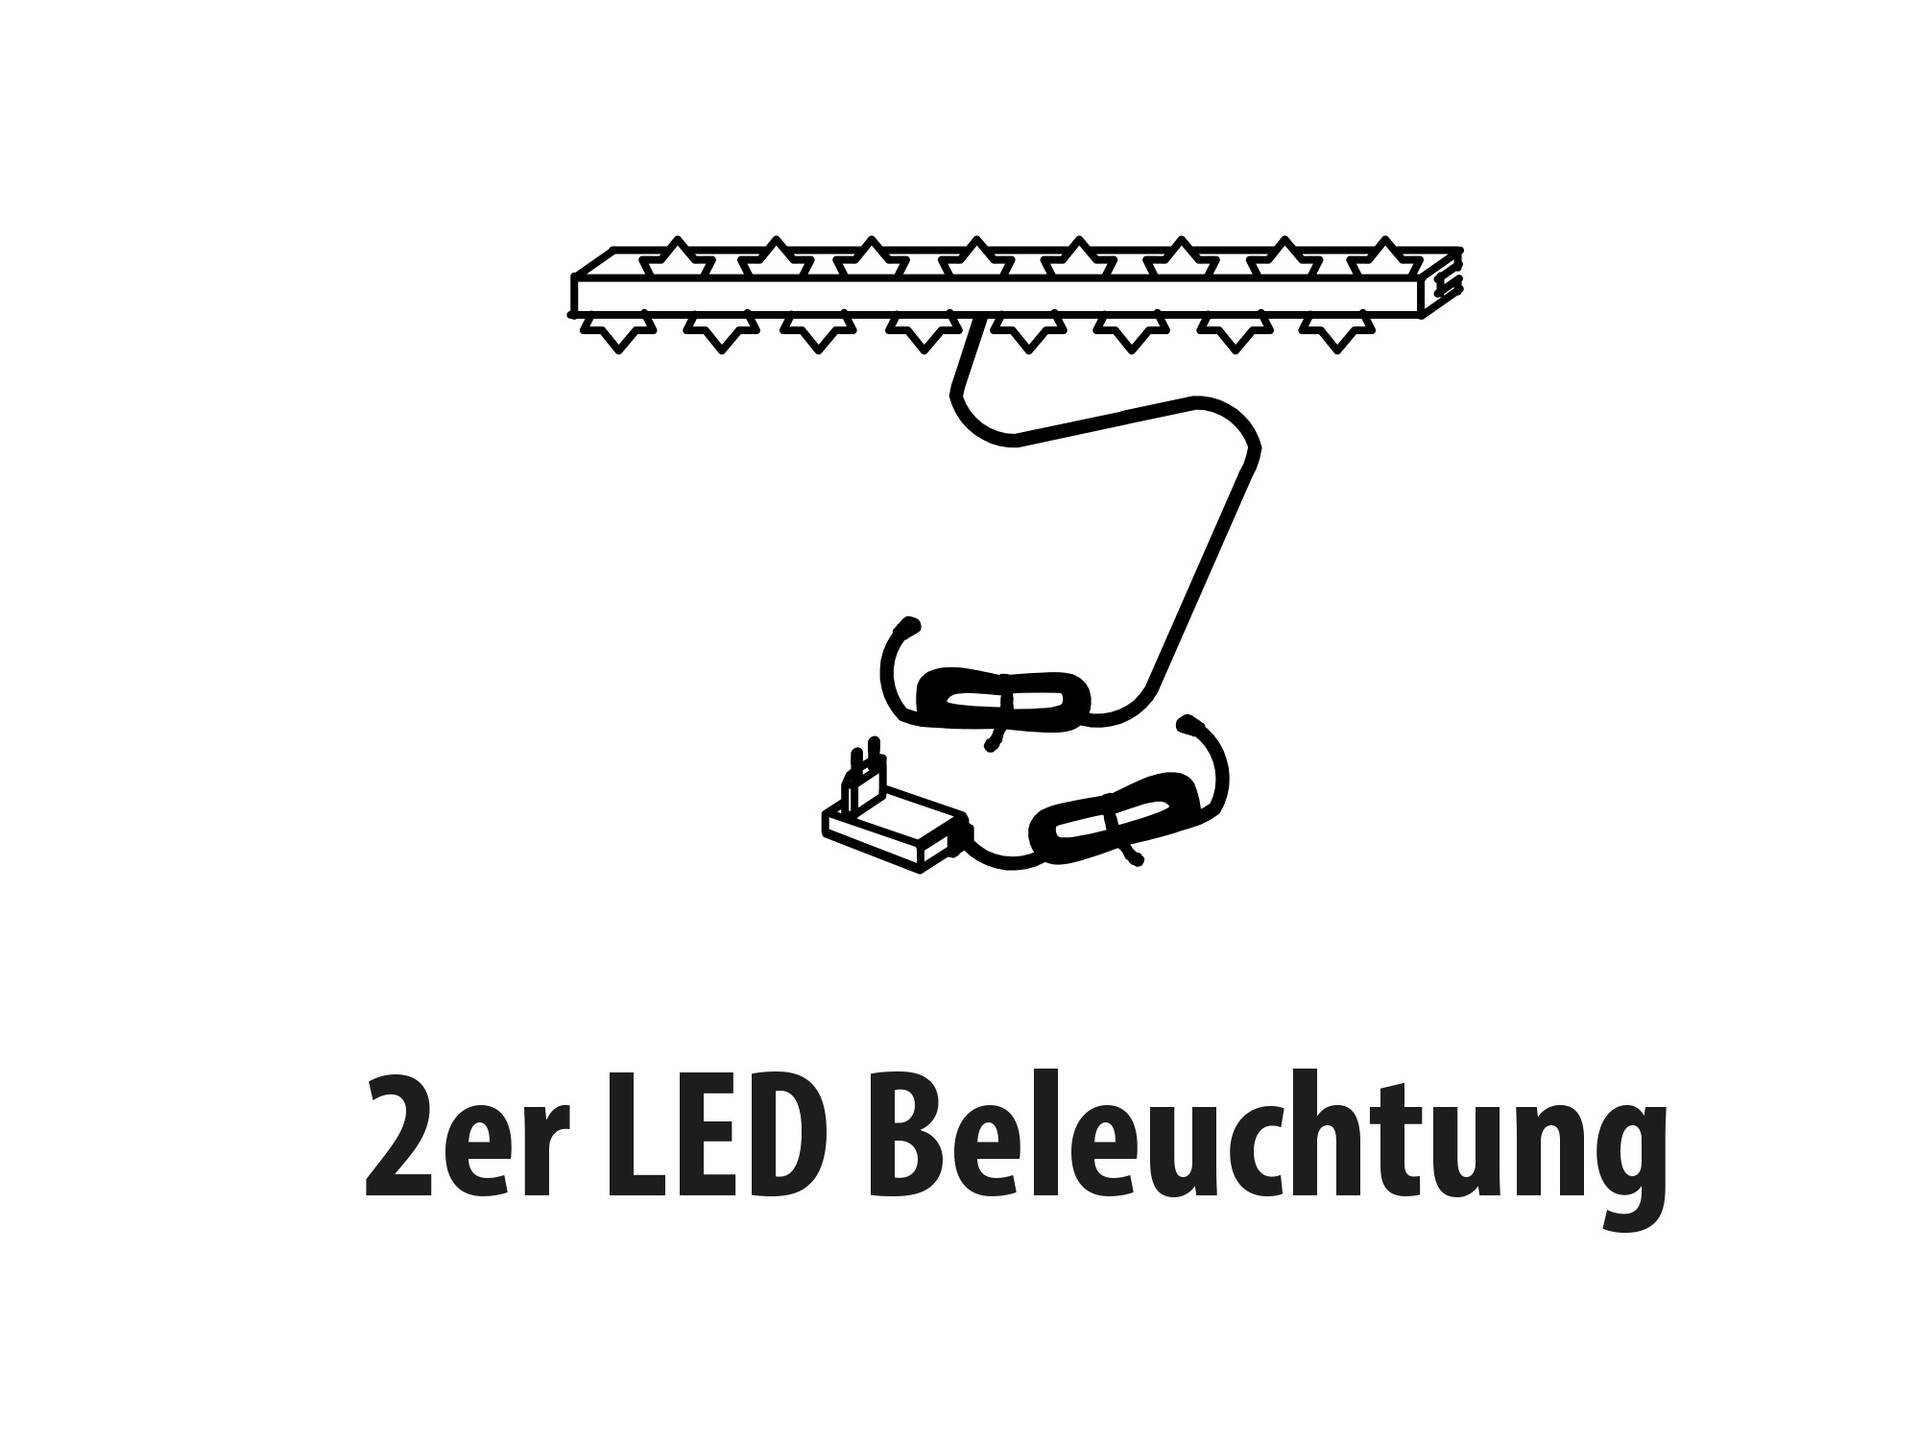 2er LED Beleuchtung für Glasboden oder Rückwand warmweiss 